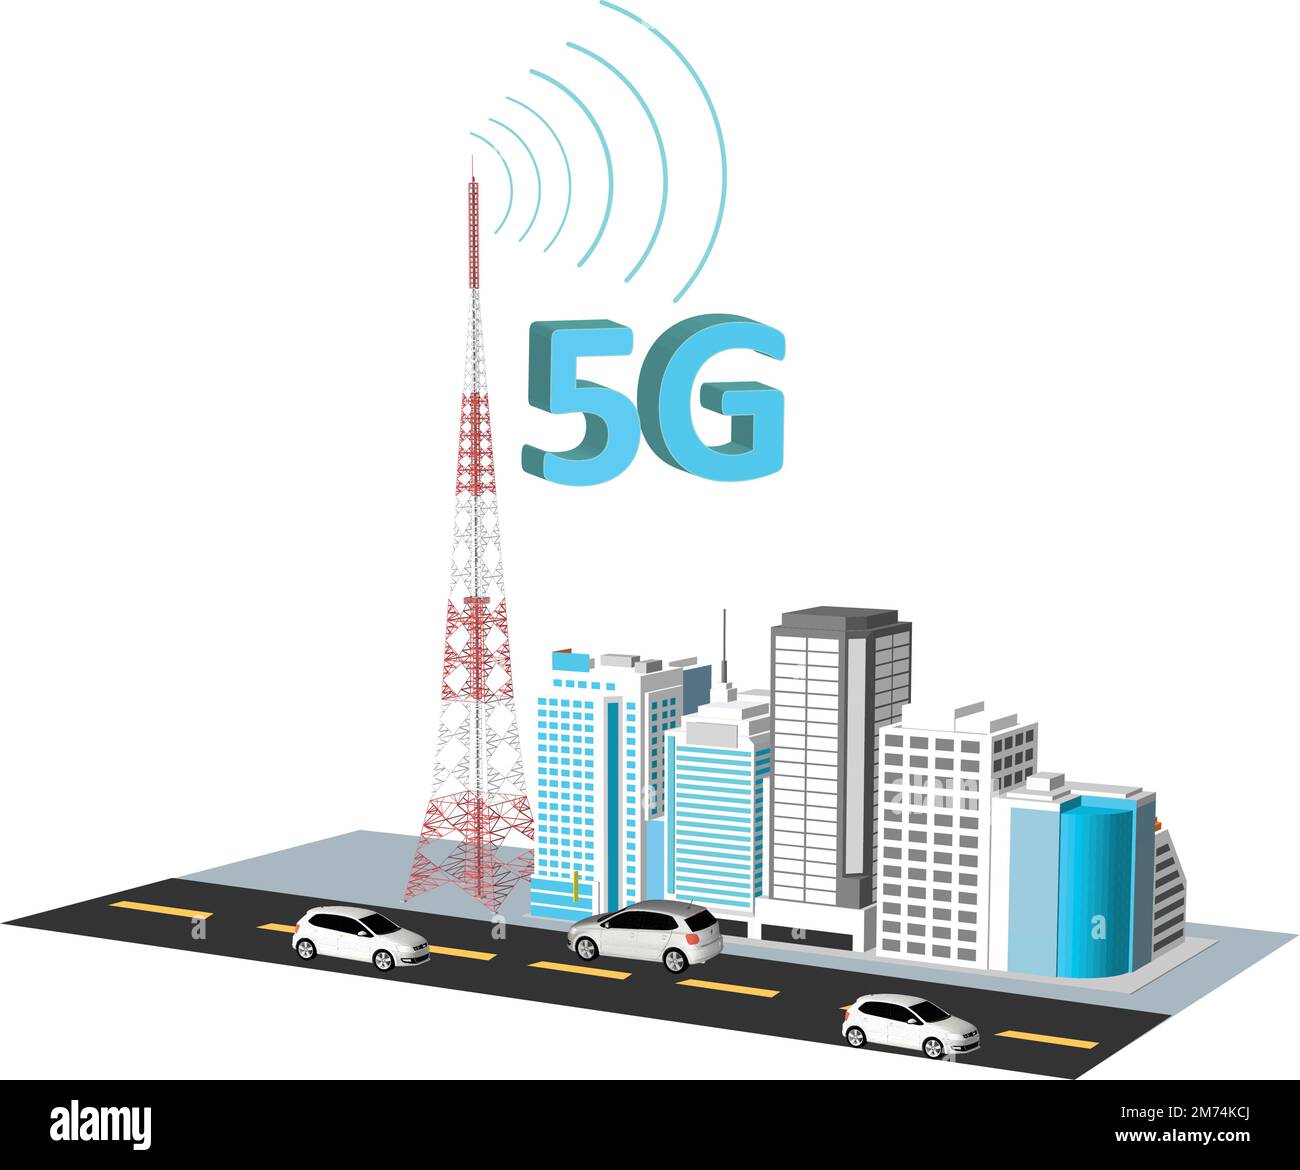 5G-Netzwerklogo über der Smart City mit Symbolen der Wolkenkratzer der Stadtinfrastruktur. High-Speed-Breitband-Telekommunikation, drahtloses Internetkonzept Stock Vektor